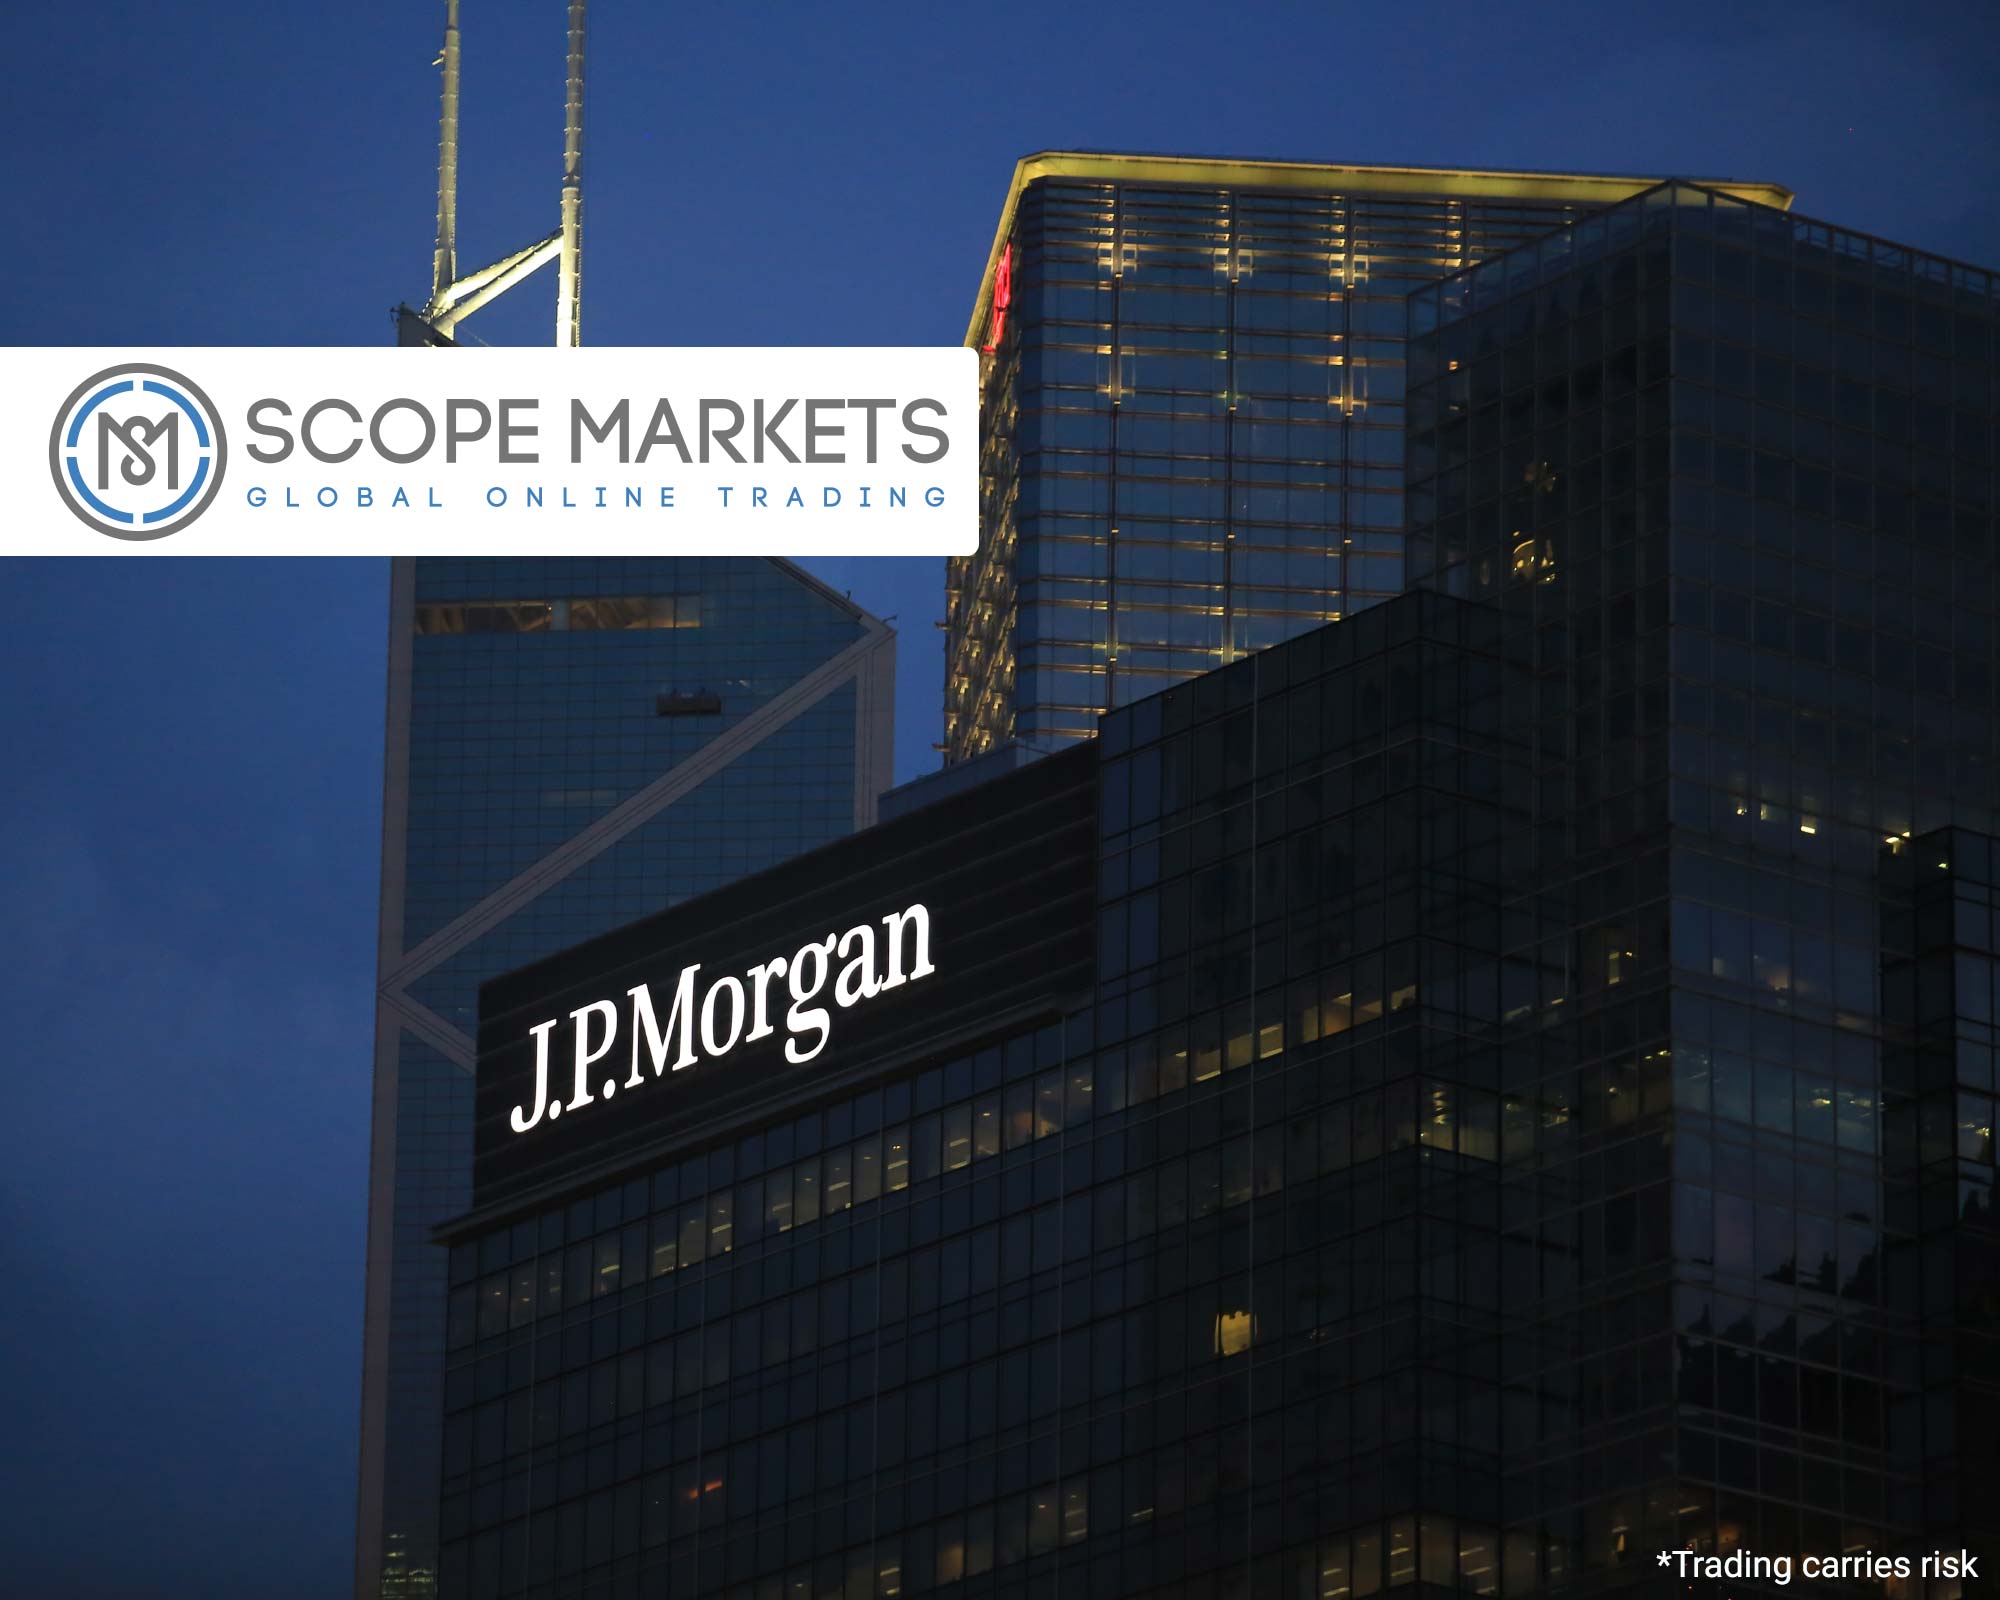 JPMorgan Set To Release 2021 Q1 Earnings - SCOPE MARKETS Blog